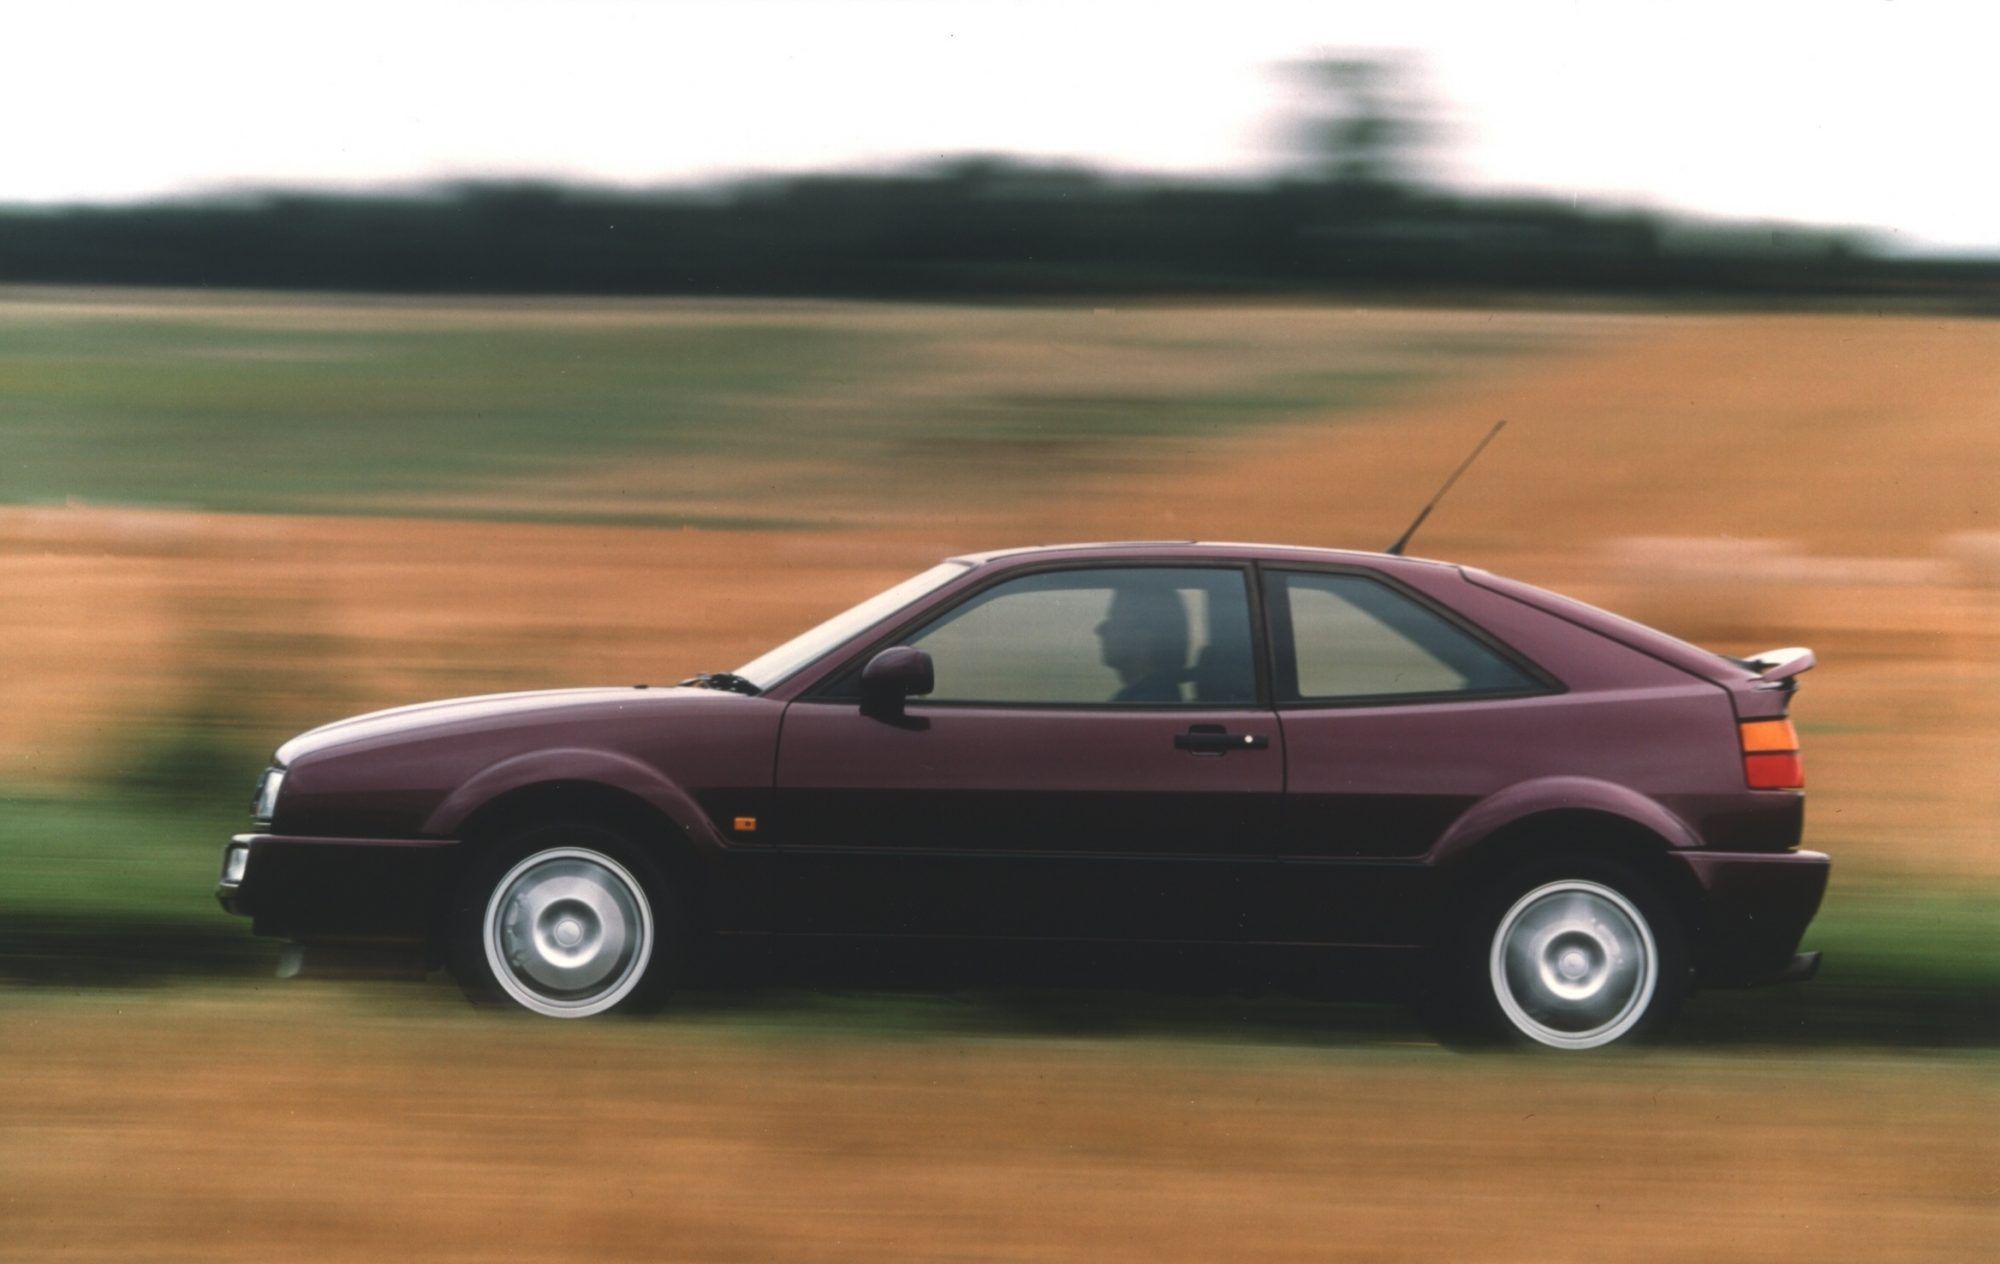 VW Corrado side profile